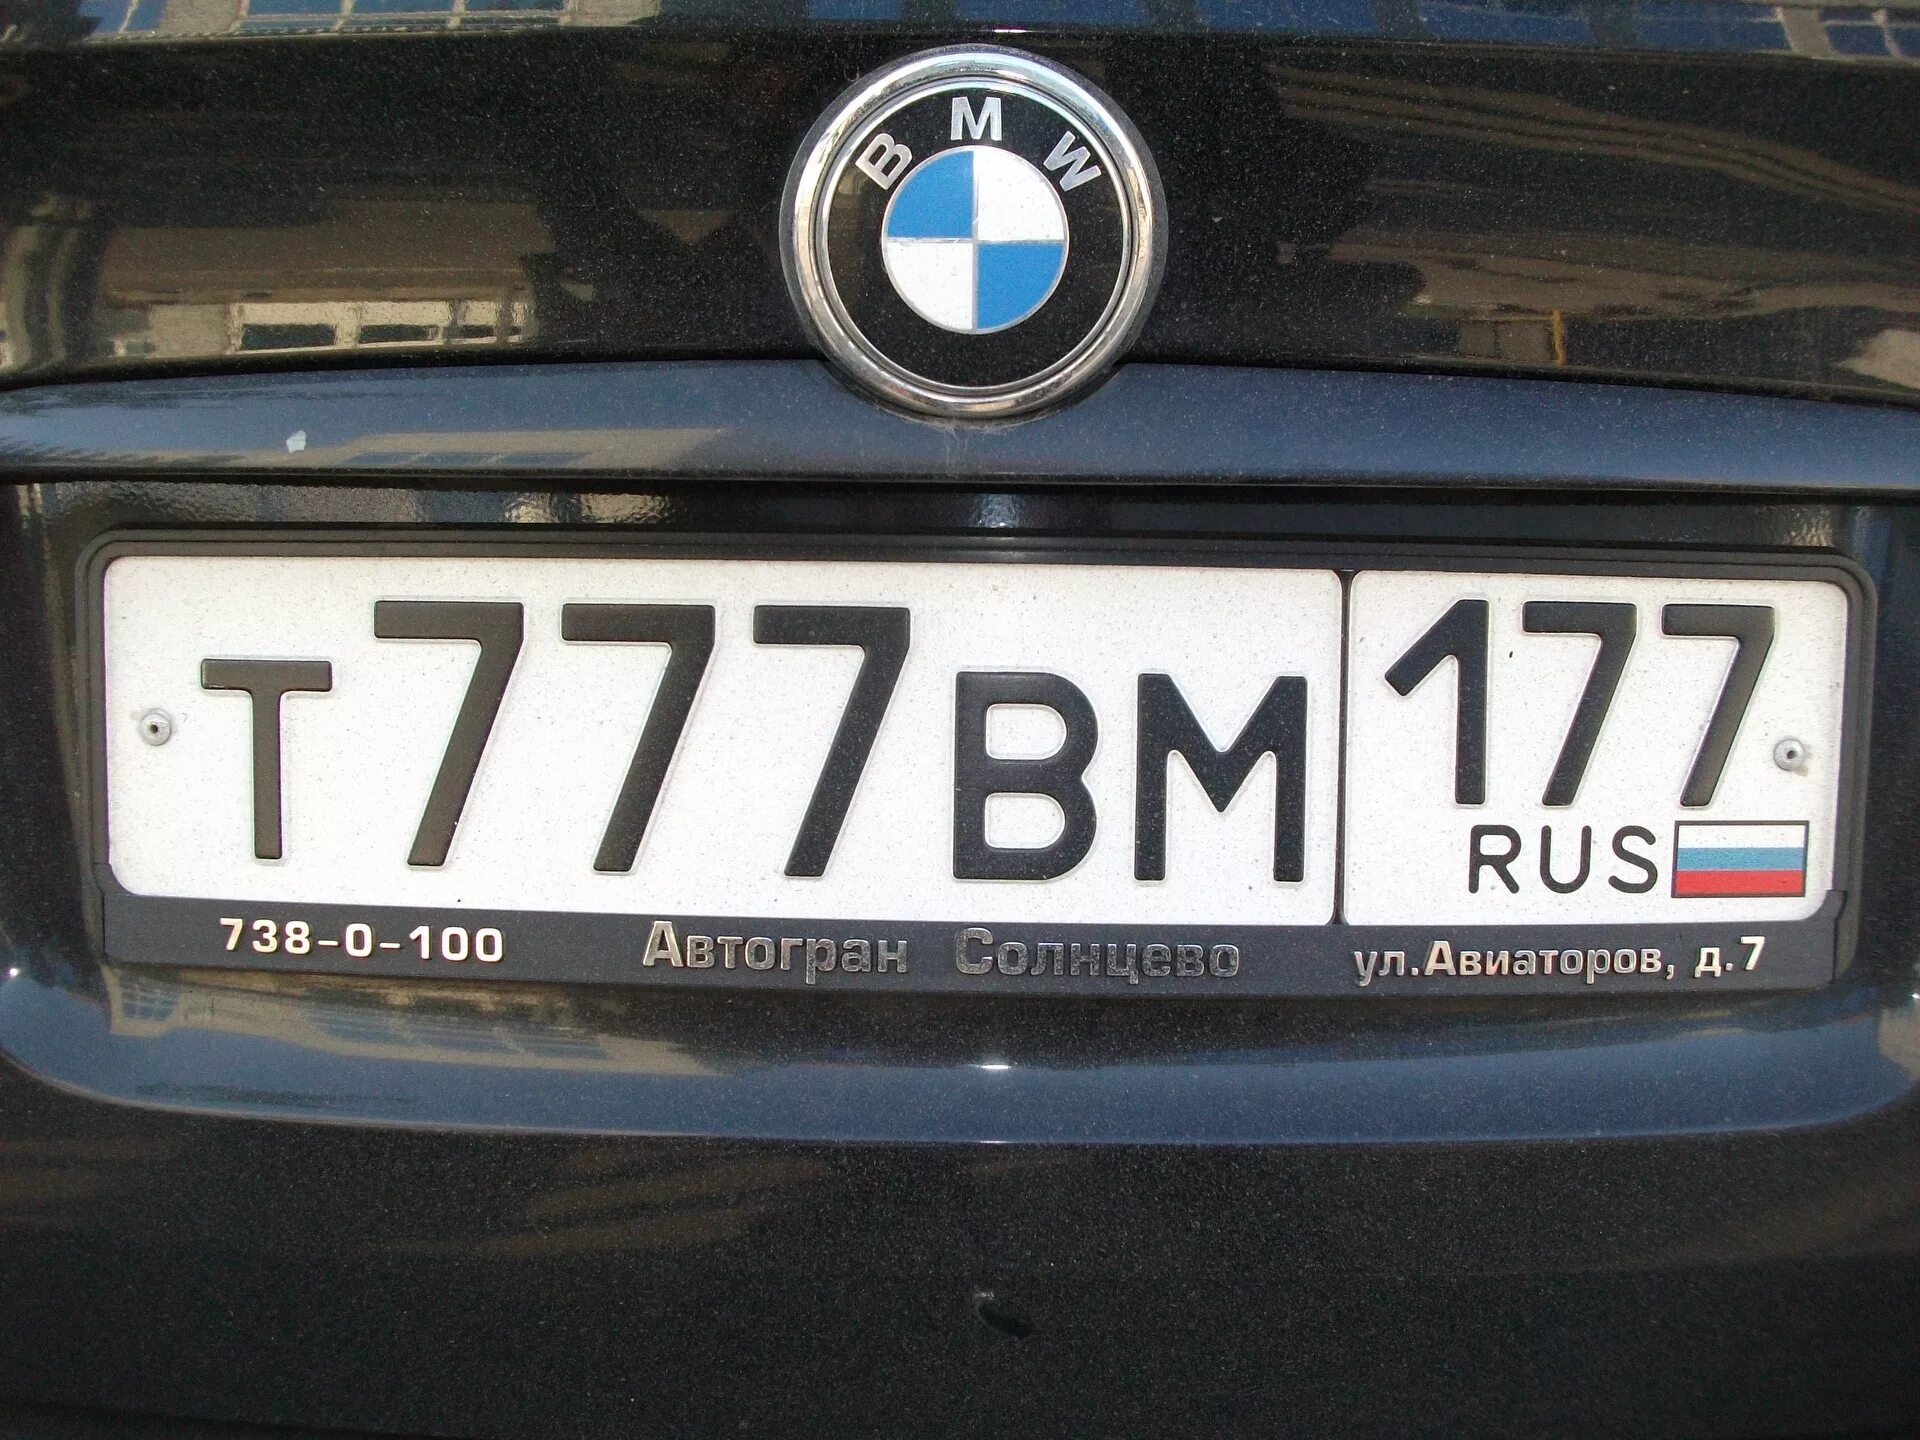 Номер видала. Номера машин. Номерной знак автомобиля. Российские номера. Российские номера машин.